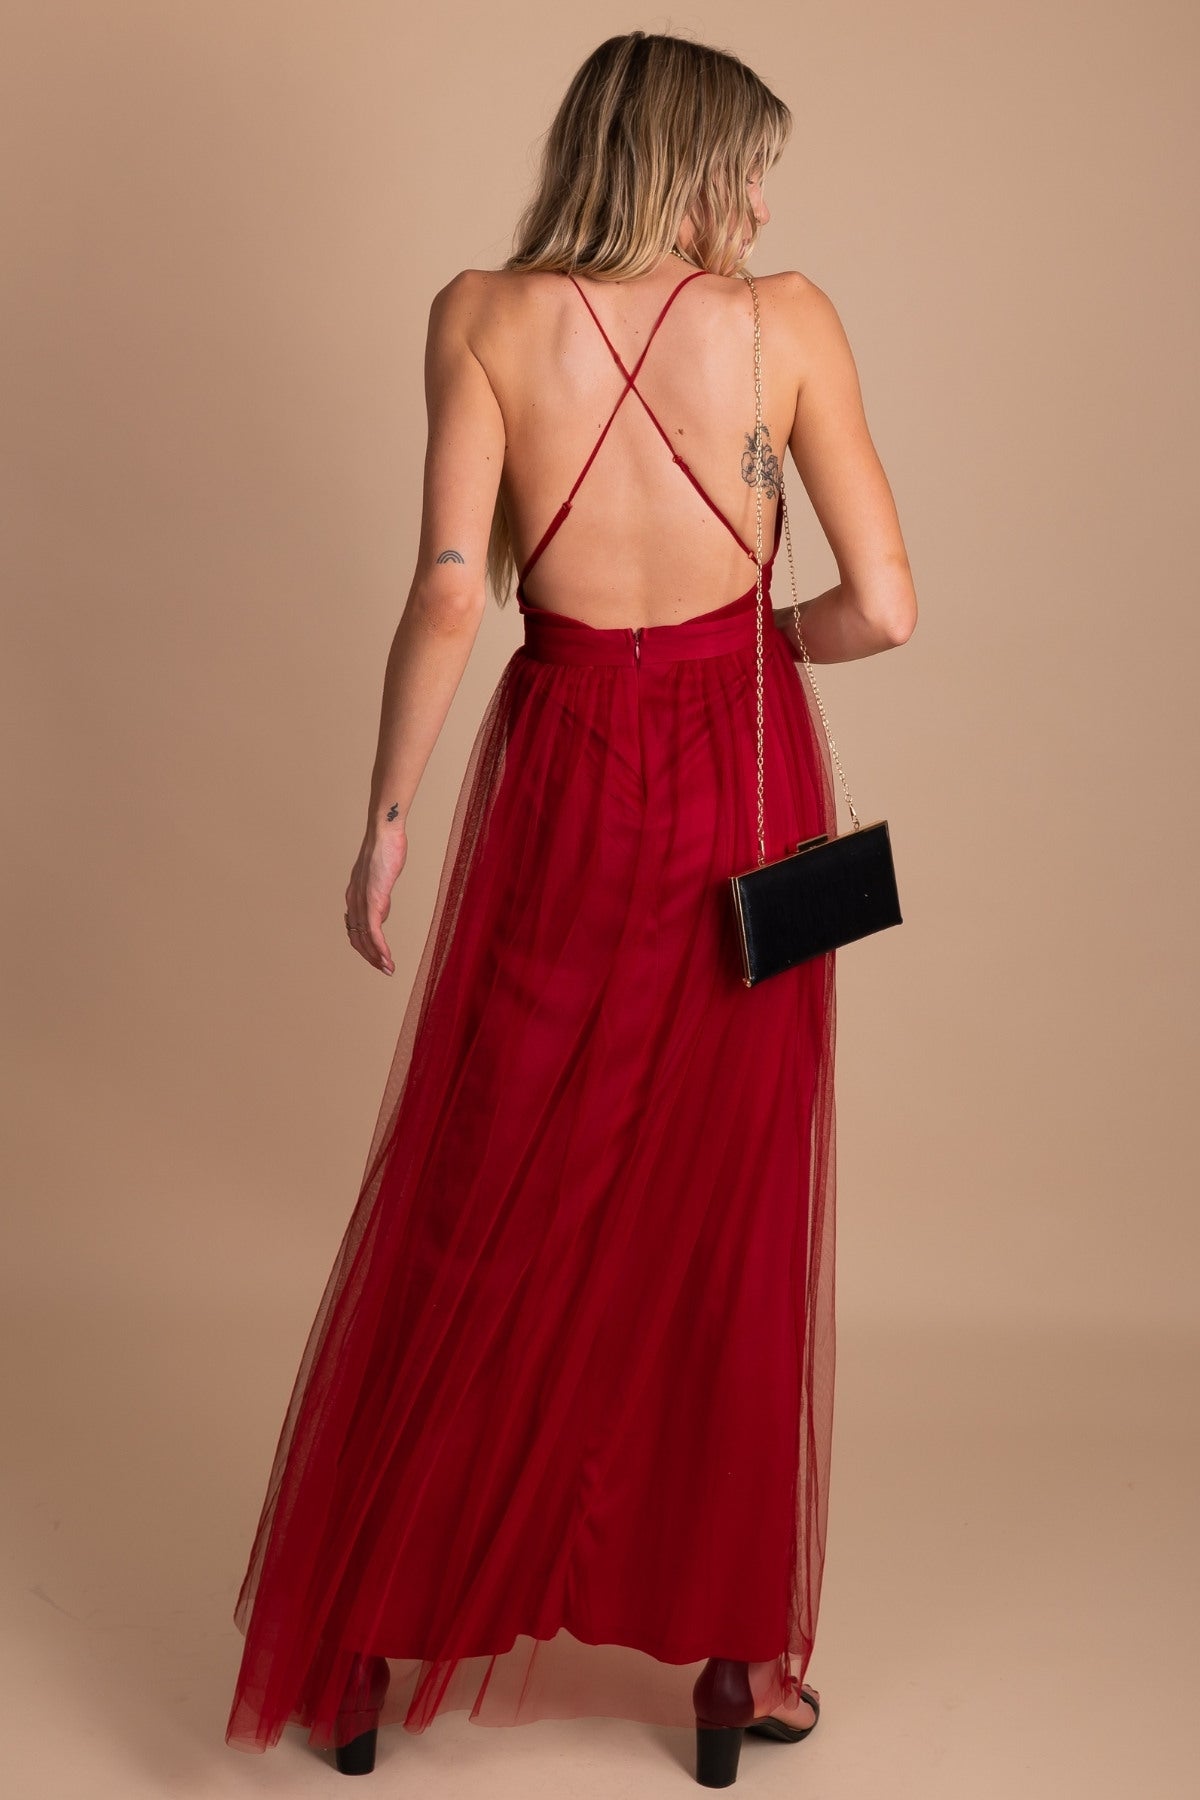 Maxi Dress - Red / Deep Plunging Neckline / Cold Shoulder